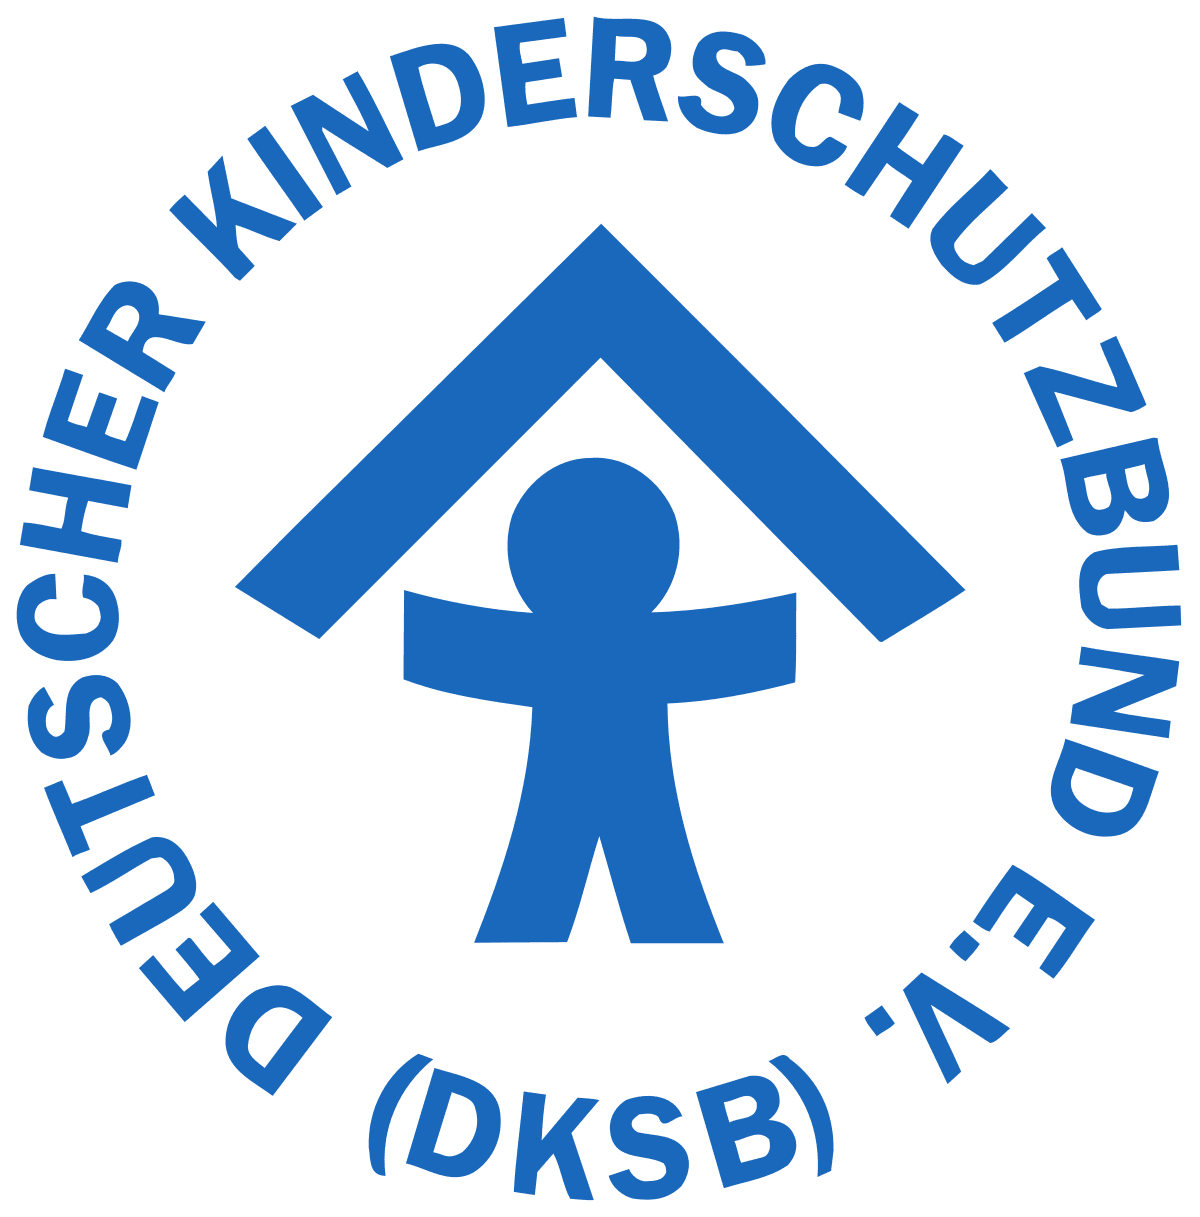 Deutscher Kinderschutz Bund + logo